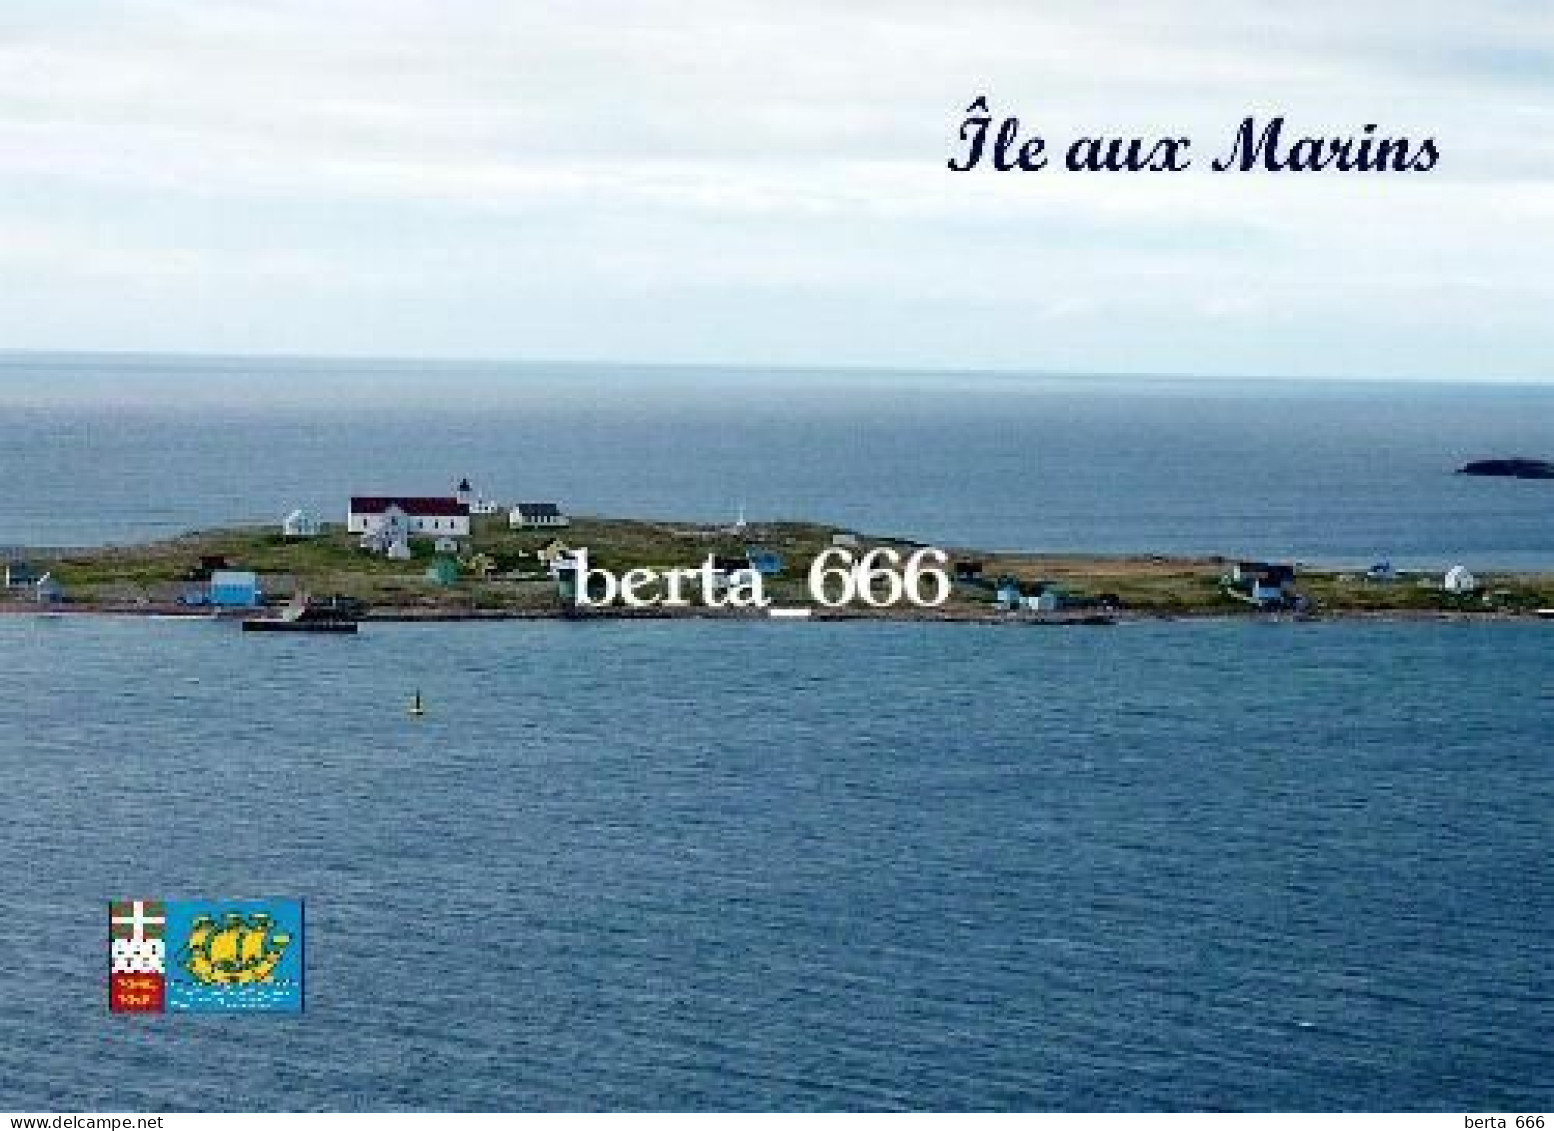 Saint Pierre And Miquelon Ile Aux Marins New Postcard - Saint-Pierre-et-Miquelon